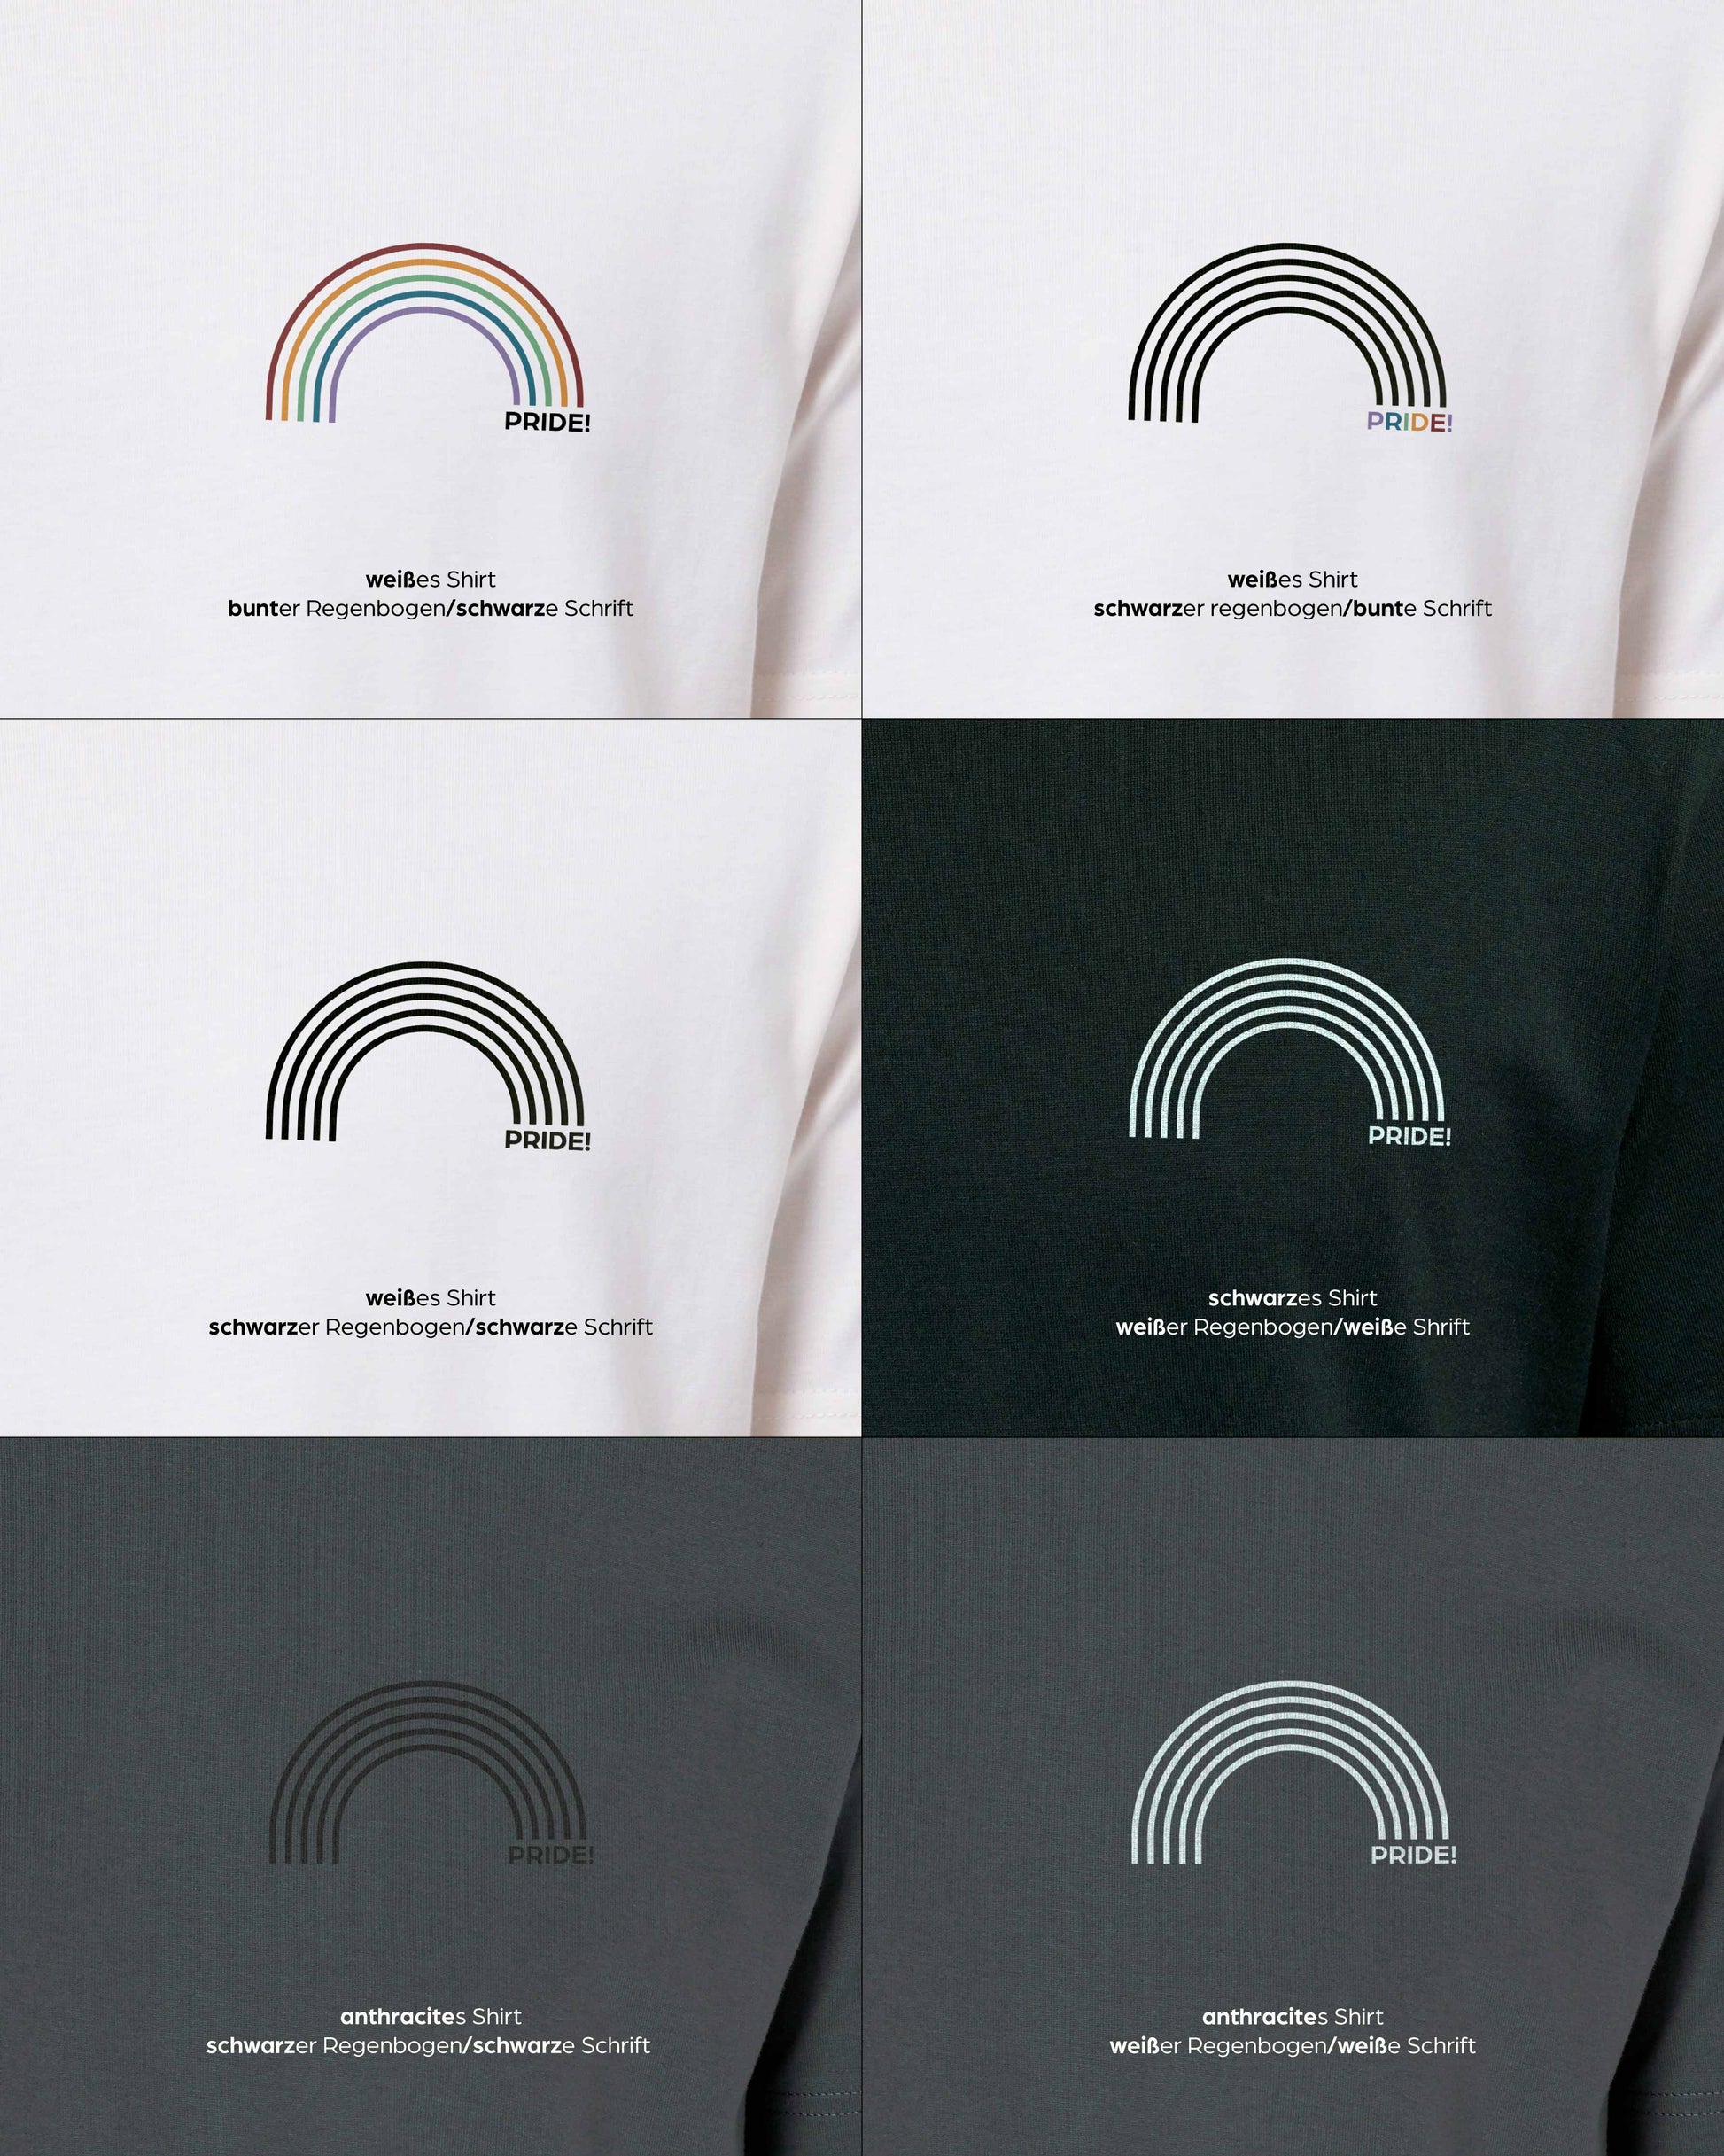 EINHORST® unisex Organic Shirt in mit dem Motiv "pride Regenbogen", Bild von allen Farbkombinationen